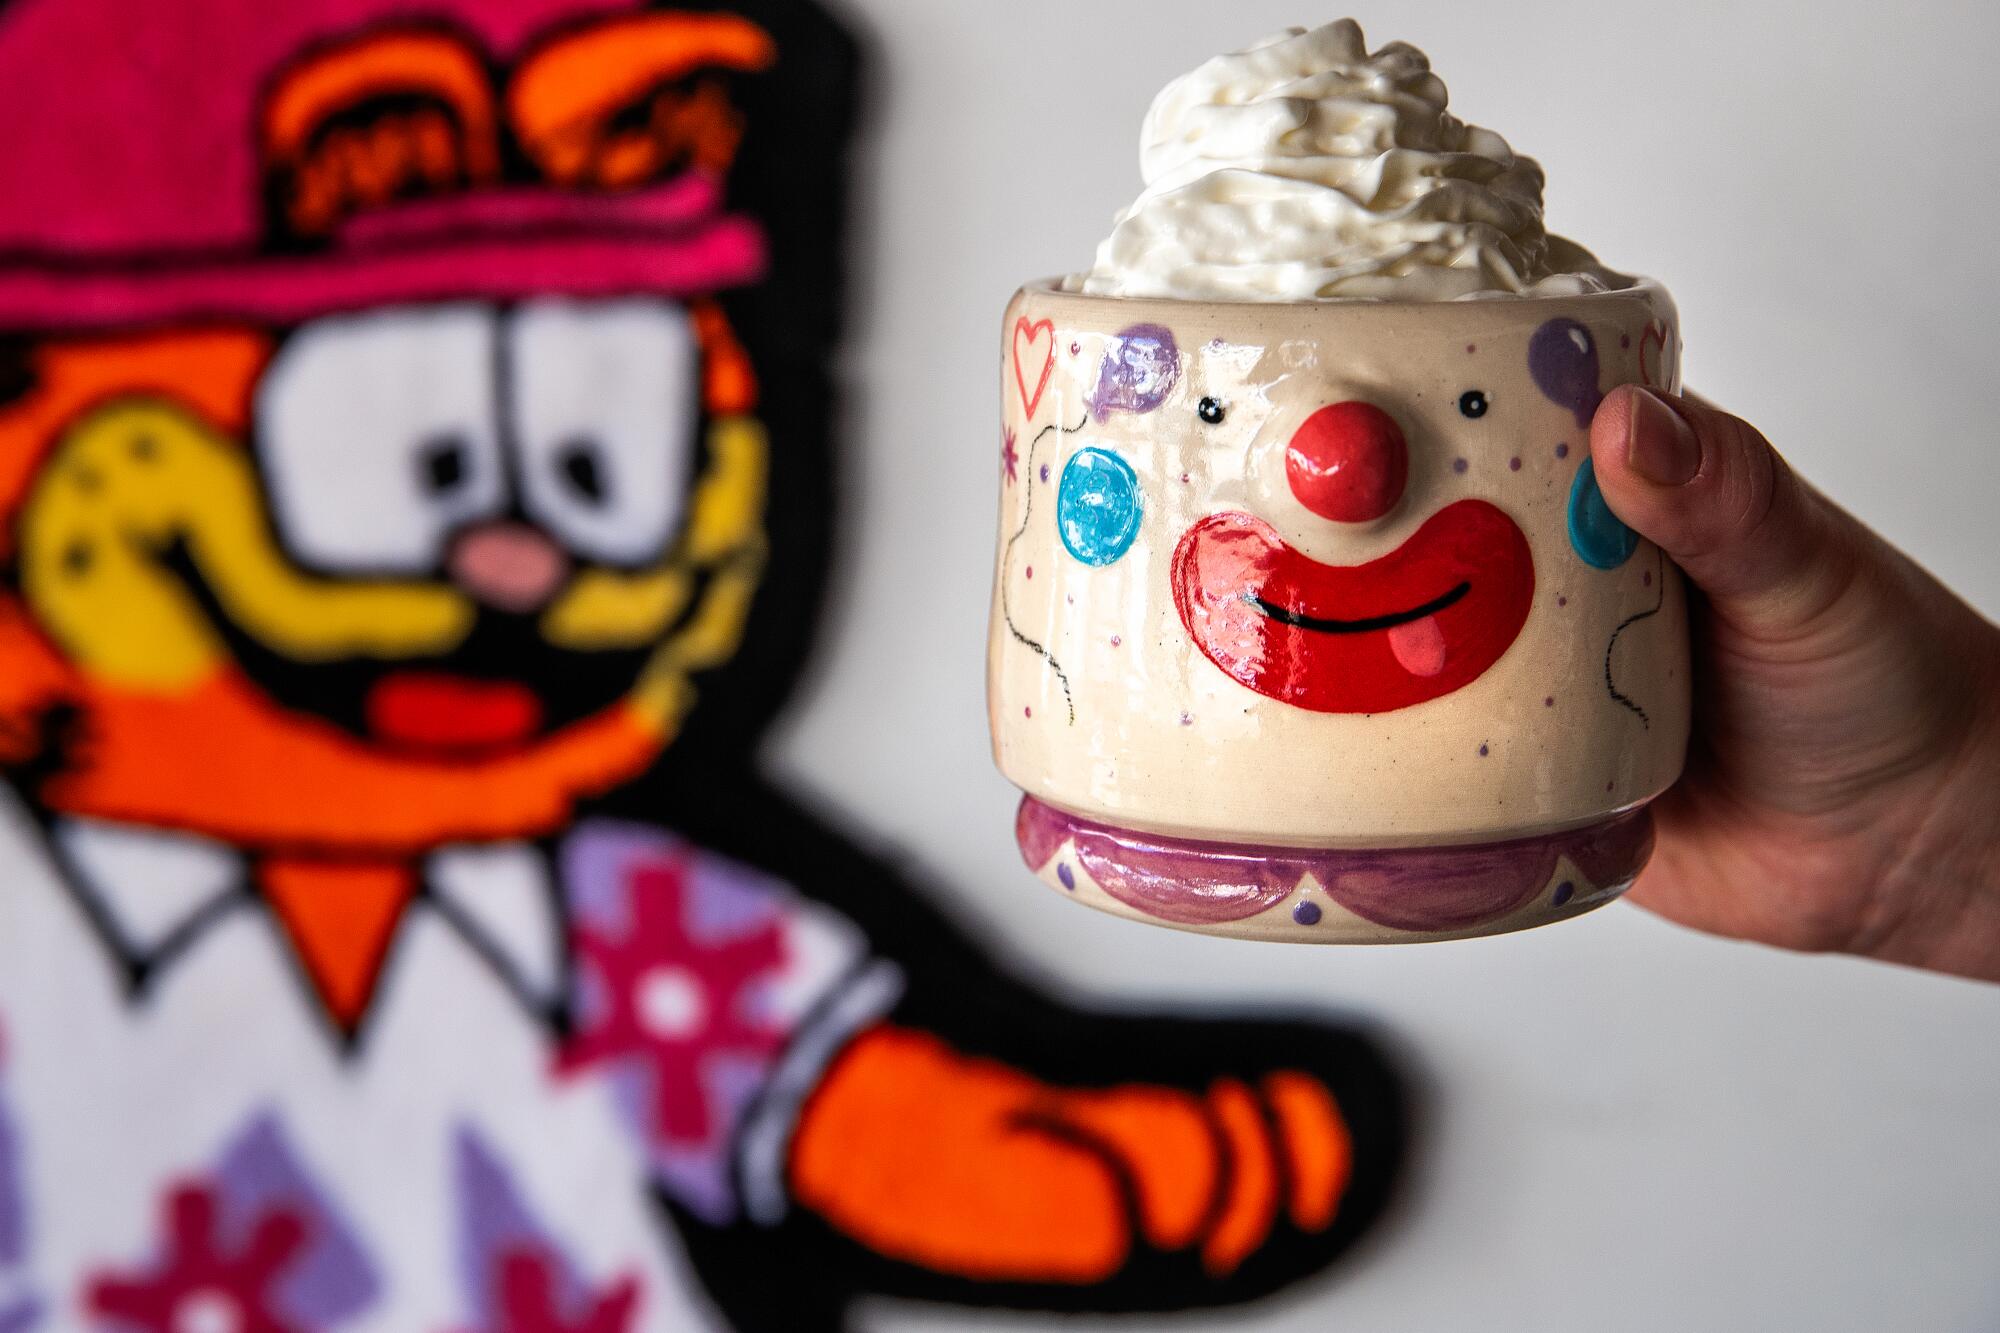 Uma das xícaras de Yousefi está em frente a um tapete Garfield, feito por sua irmã Jasmine, que vende tapetes em seu Instagram @ruggsters.